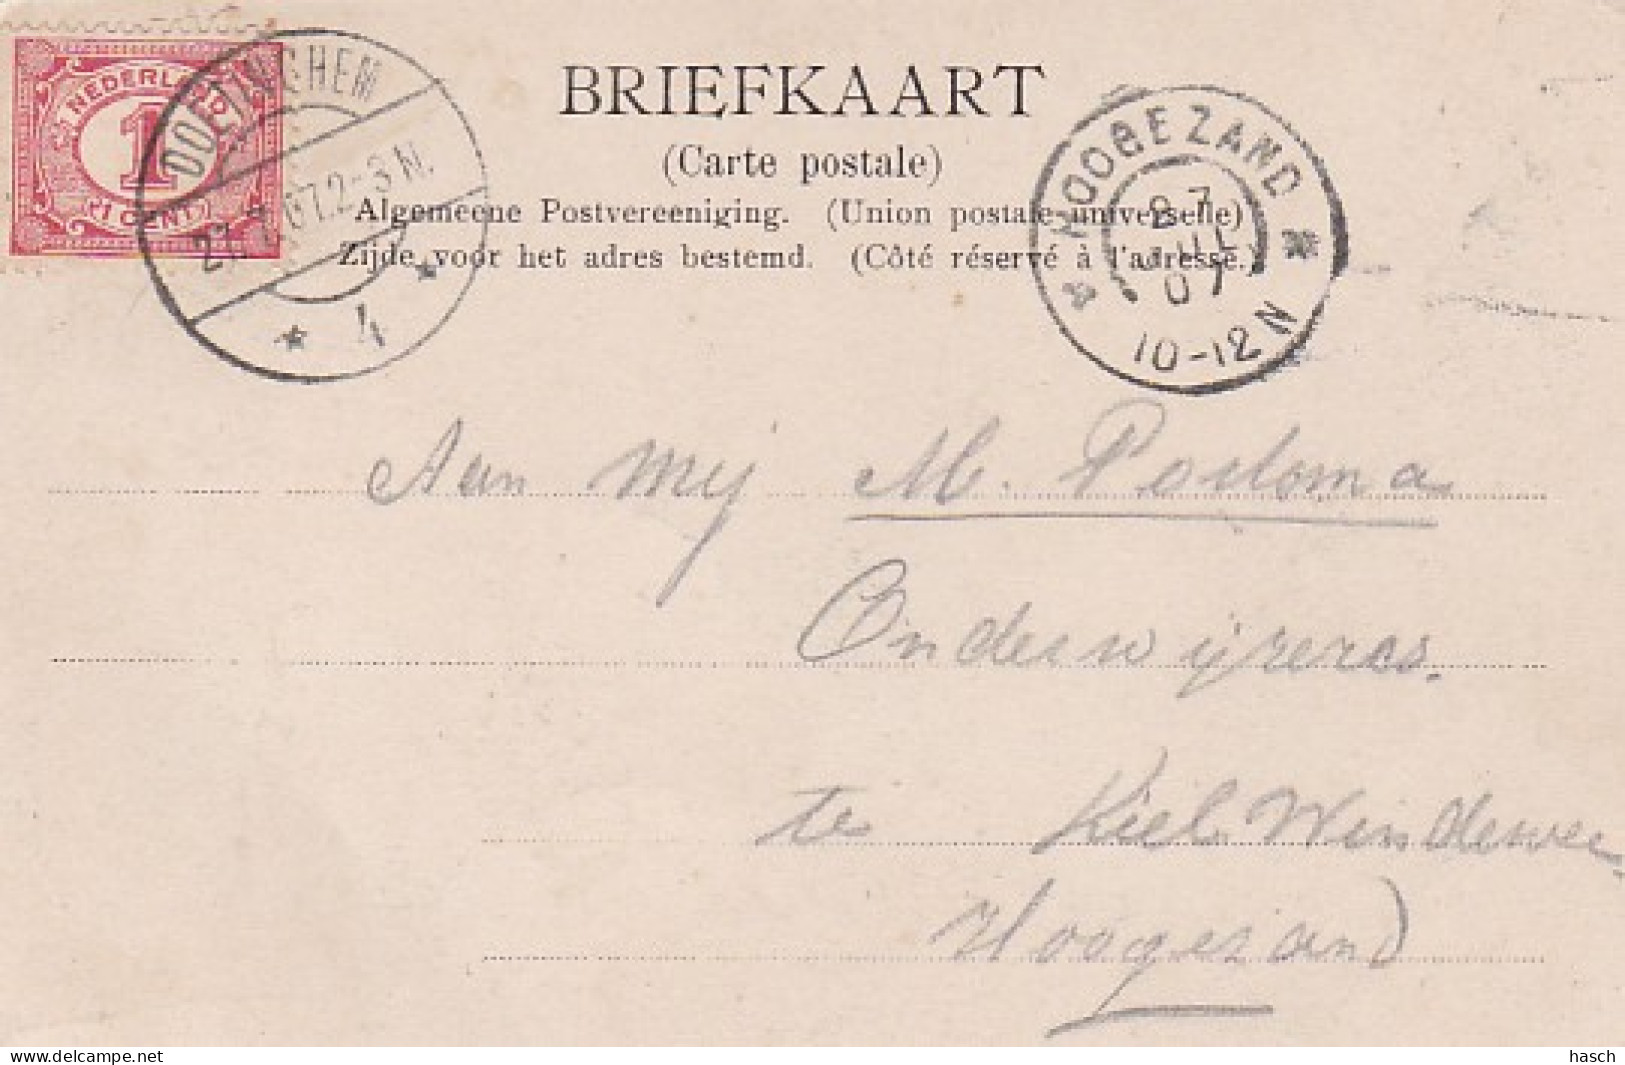 270372Ruimzicht Bij Doetinchem - 1907 - Doetinchem